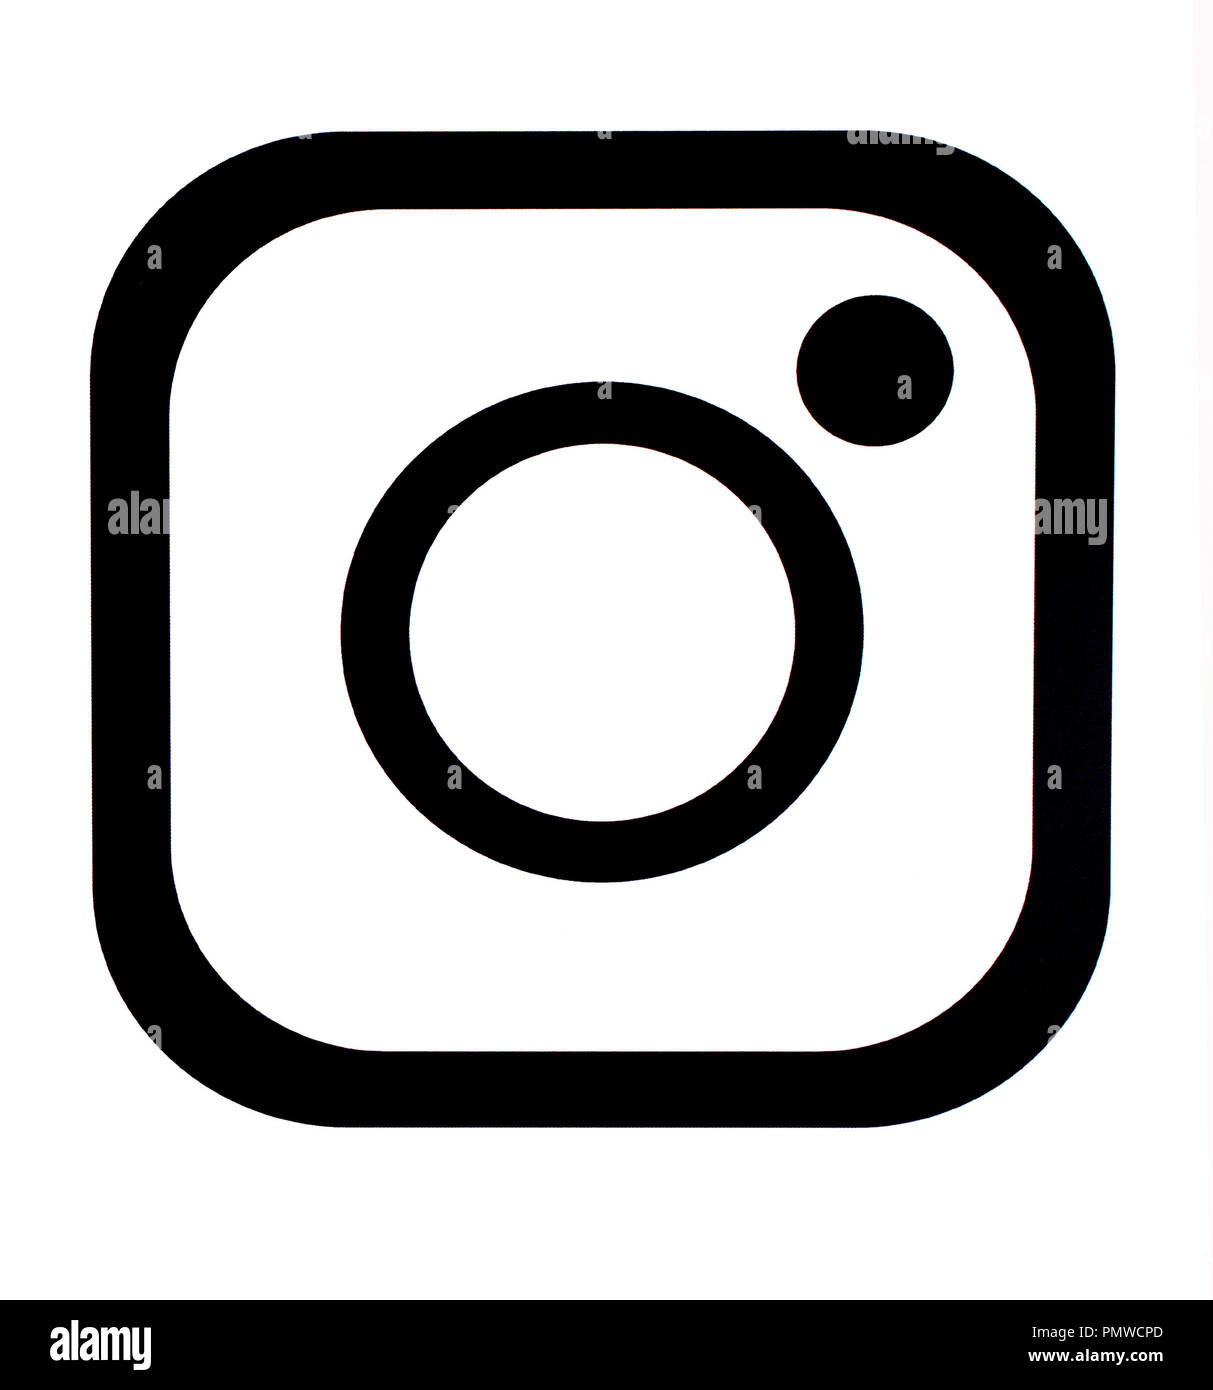 Chisinau,Moldavia Settembre 19, 2018: Instagram nuova icona stampata su carta bianca. Instagram è un online mobile di condivisione di foto e video-servizio di condivisione. Foto Stock